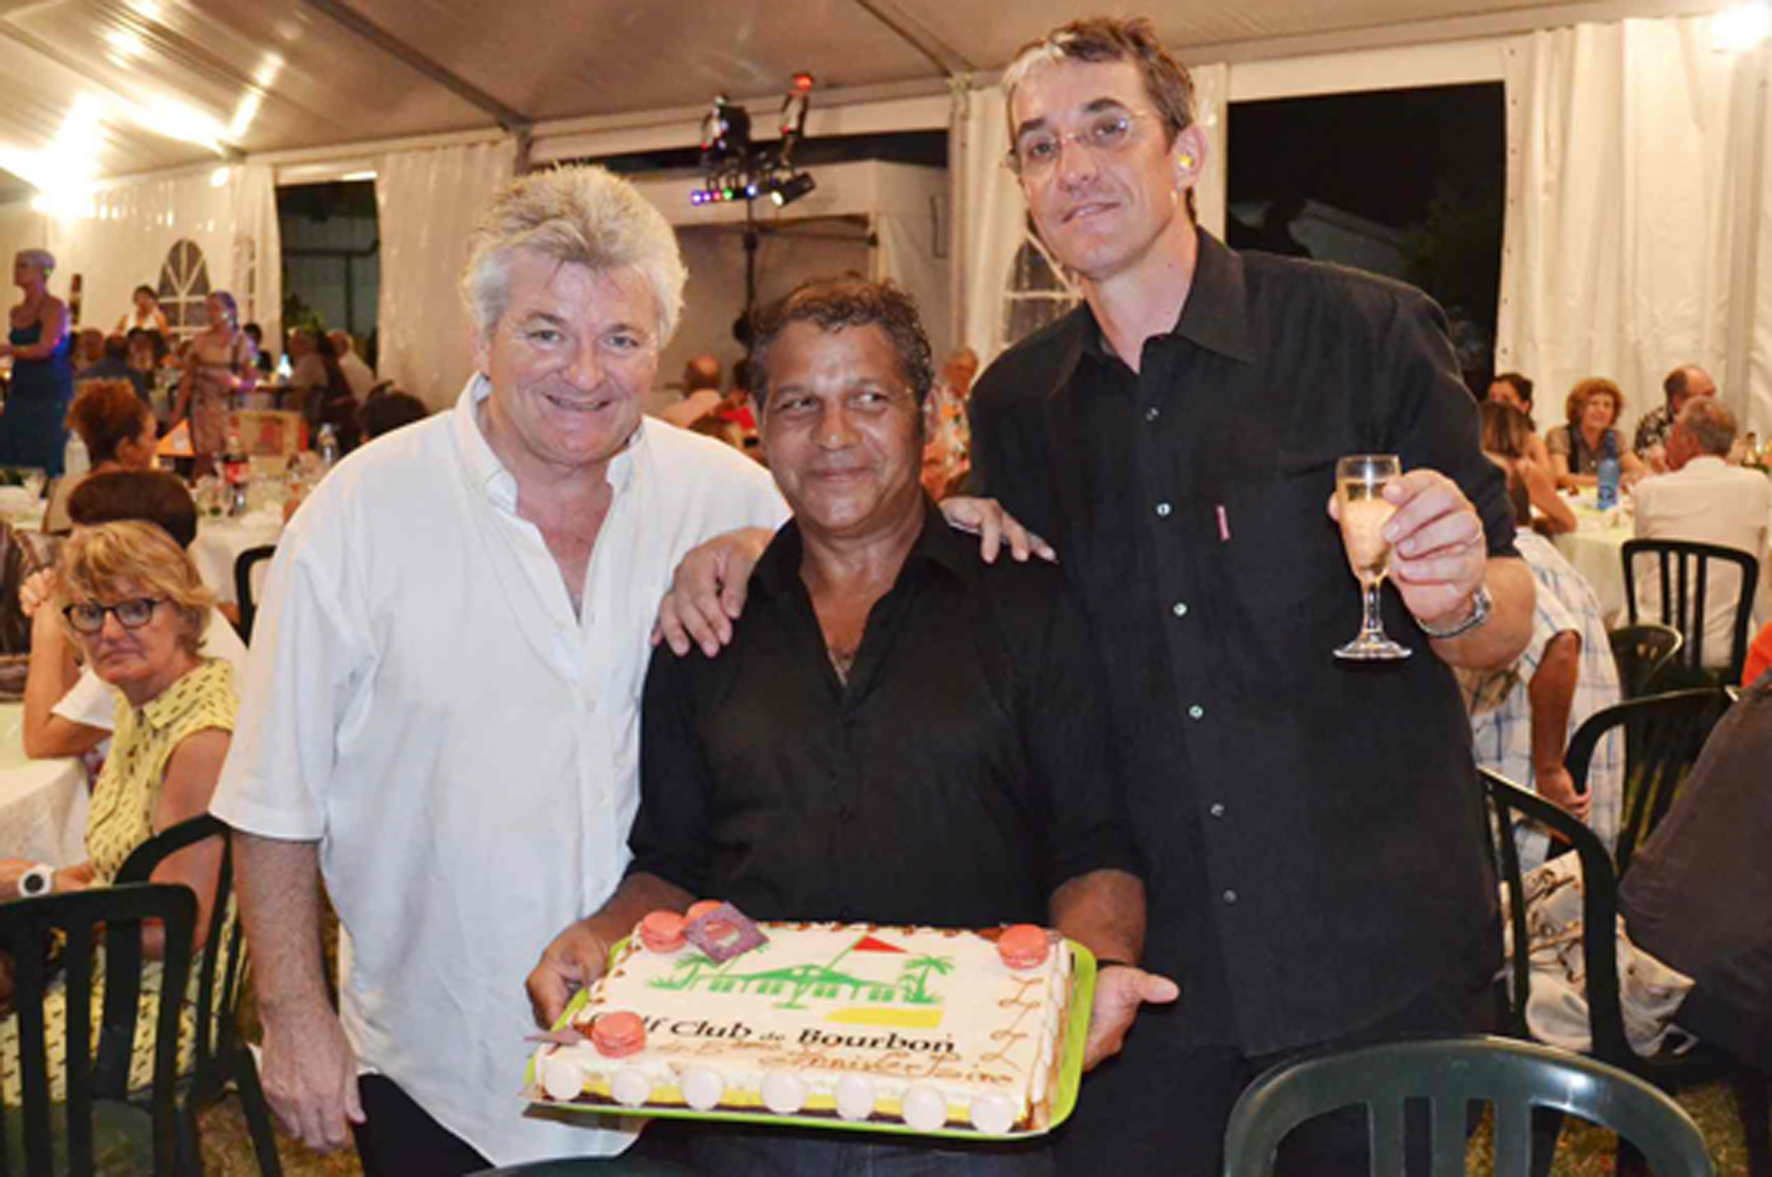 Le gâteau d'anniversaire des 45 ans du Golf Club de Bourbon. Avec le champagne qui va avec! (à consommer avec modération)